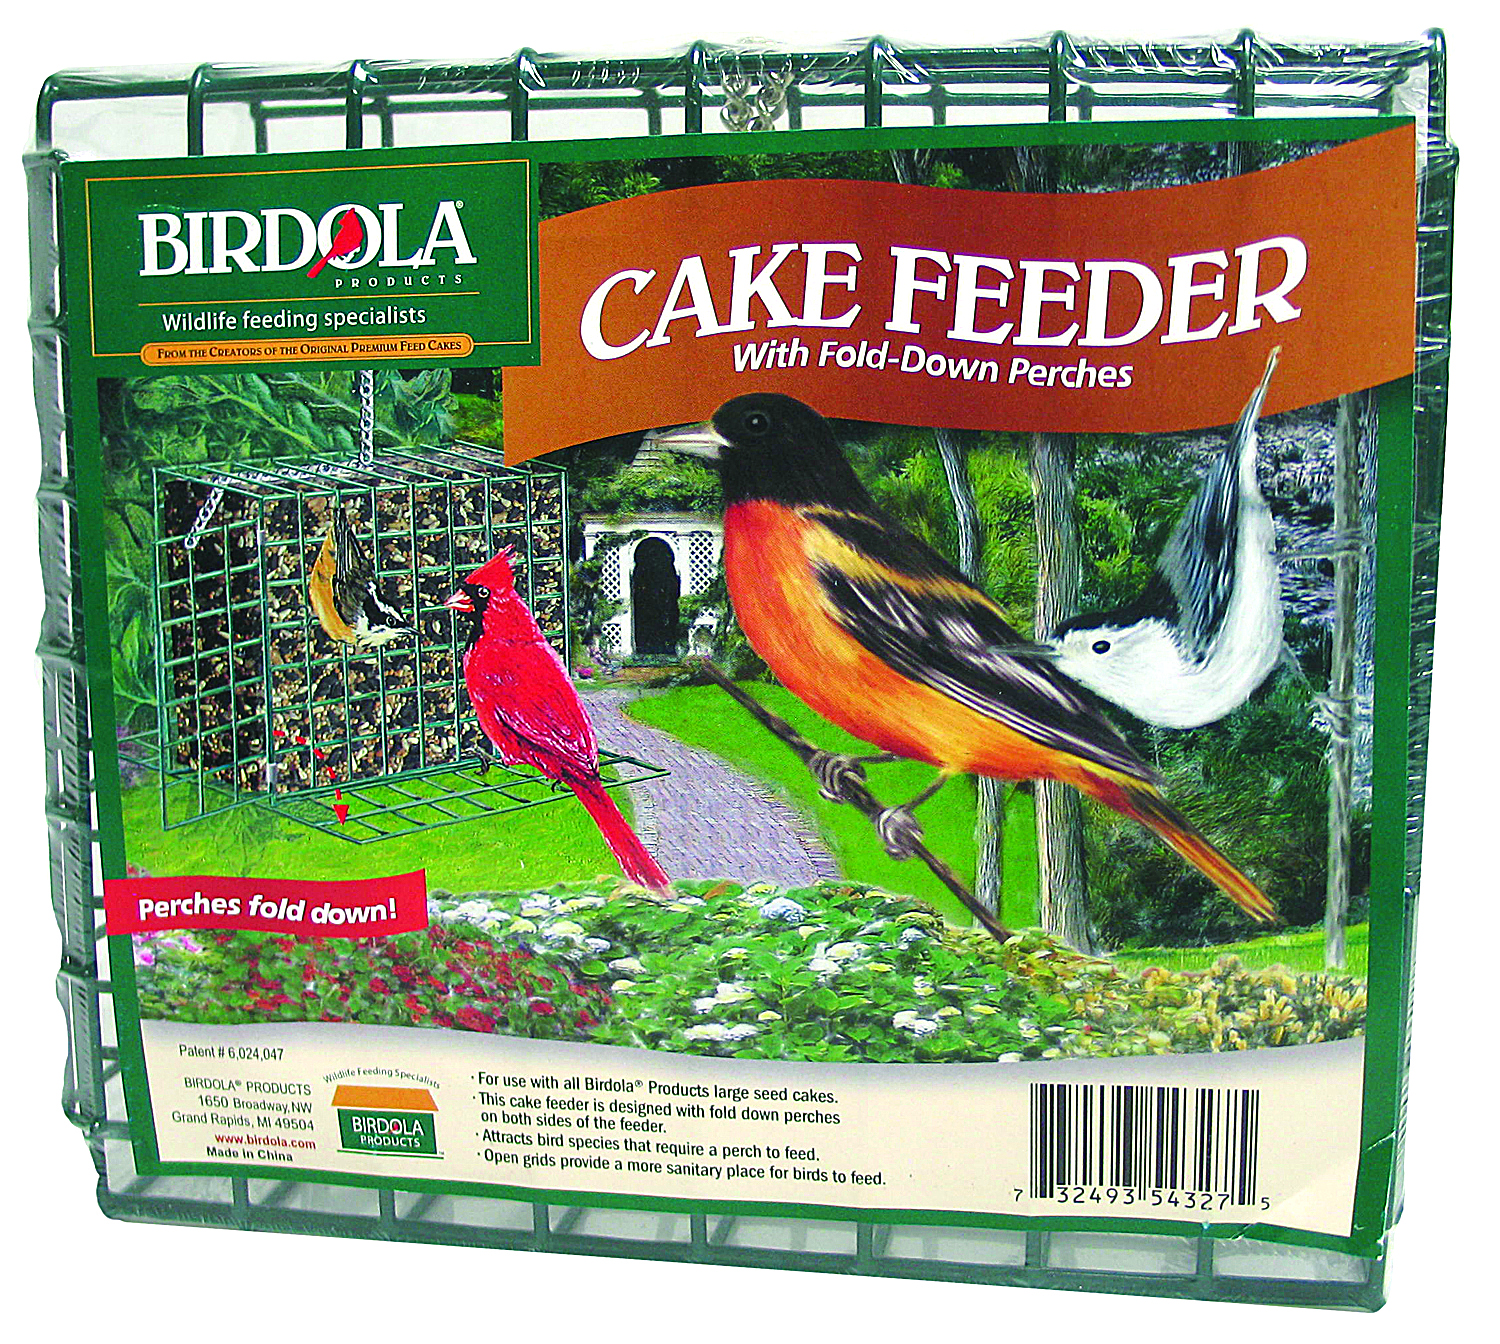 BIRDOLA CAKE FEEDER WITH FOLD-DOWN PERCHES